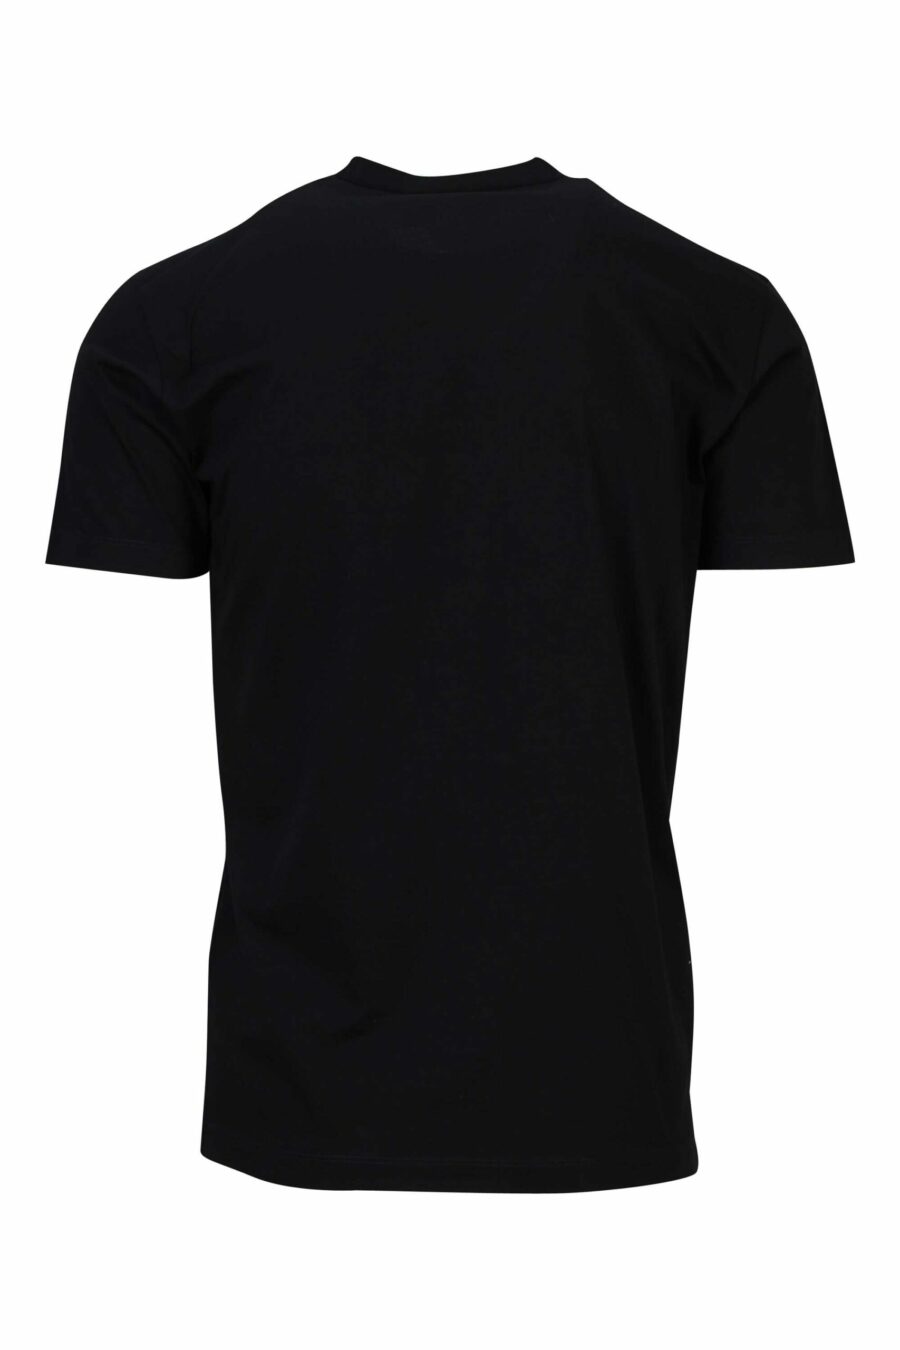 Schwarzes T-Shirt mit geprägtem schwarzen Maxilogo - 8054148448158 1 skaliert